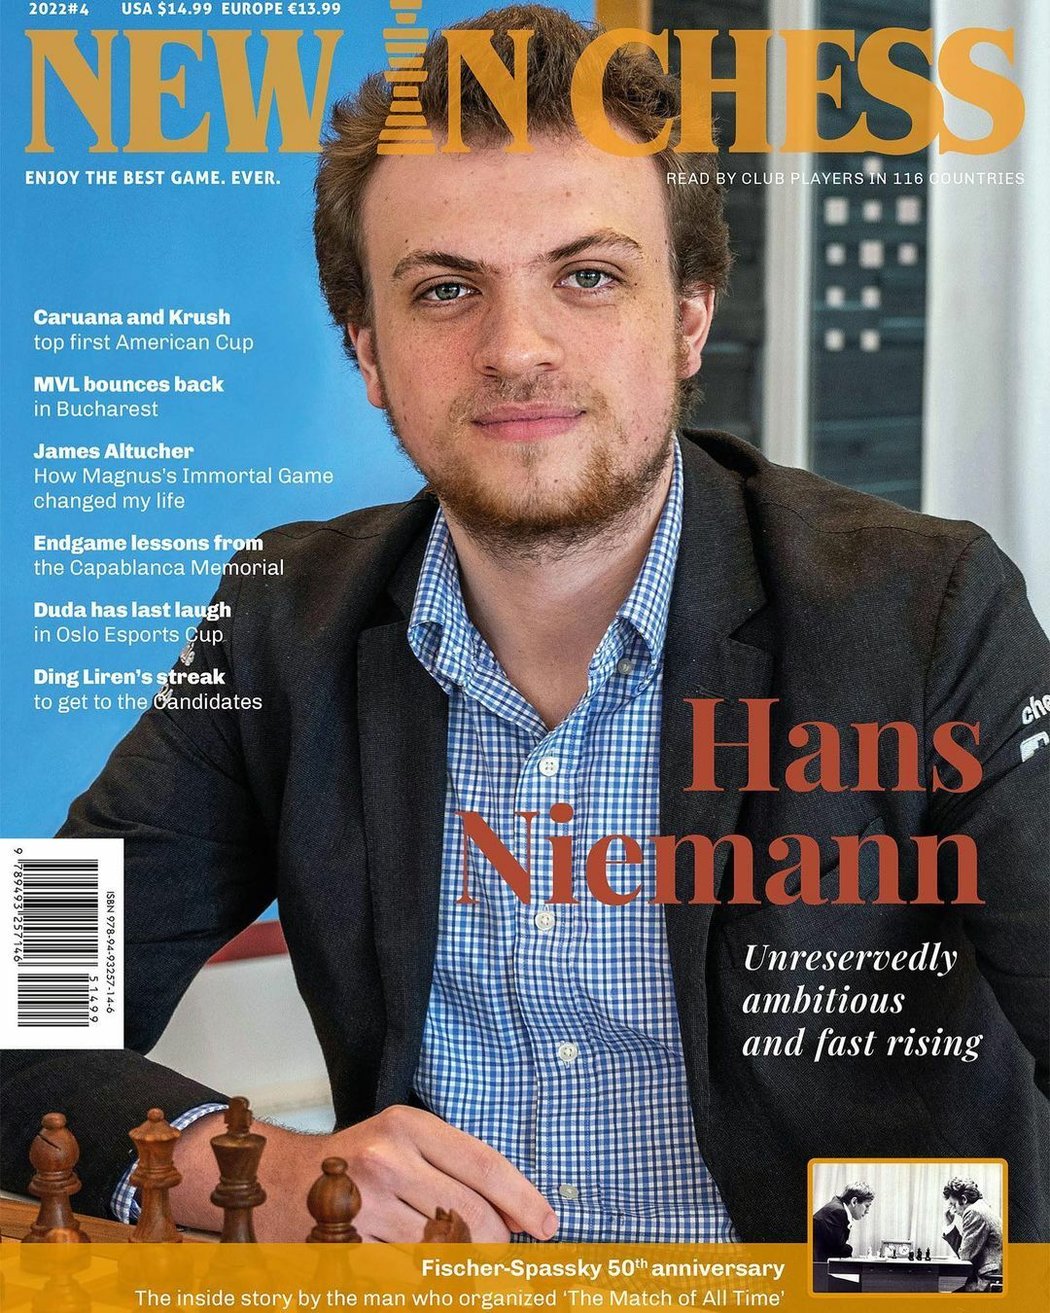 Šachový velmistr Hans Niemann